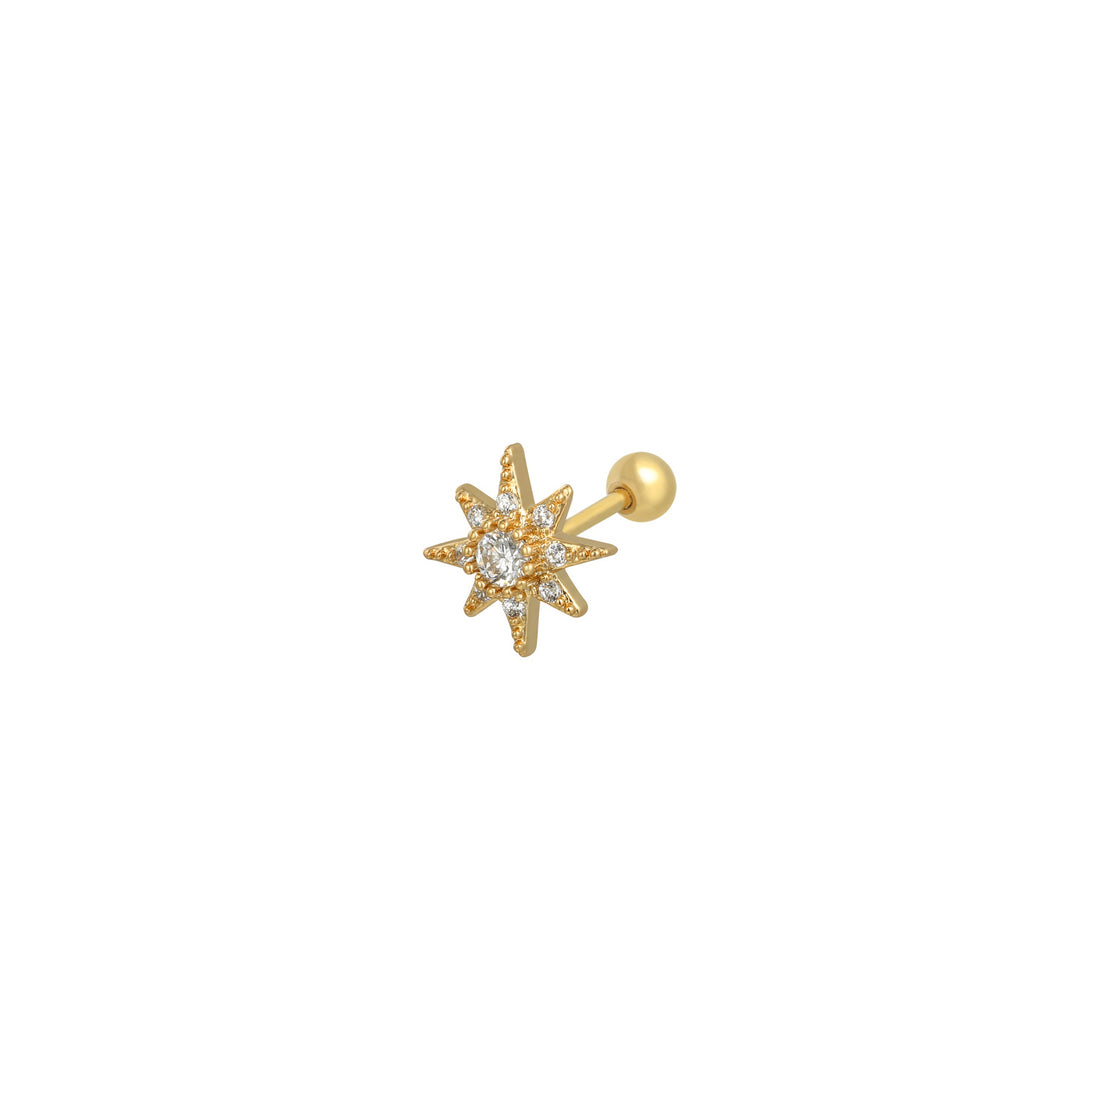 Gouden piercing in de vorm van de Pool ster. De piercing is gemaakt van koper met een gold plated laagje. De piercing is waterproof en verkleurt niet.  Afmetingen  1 cm